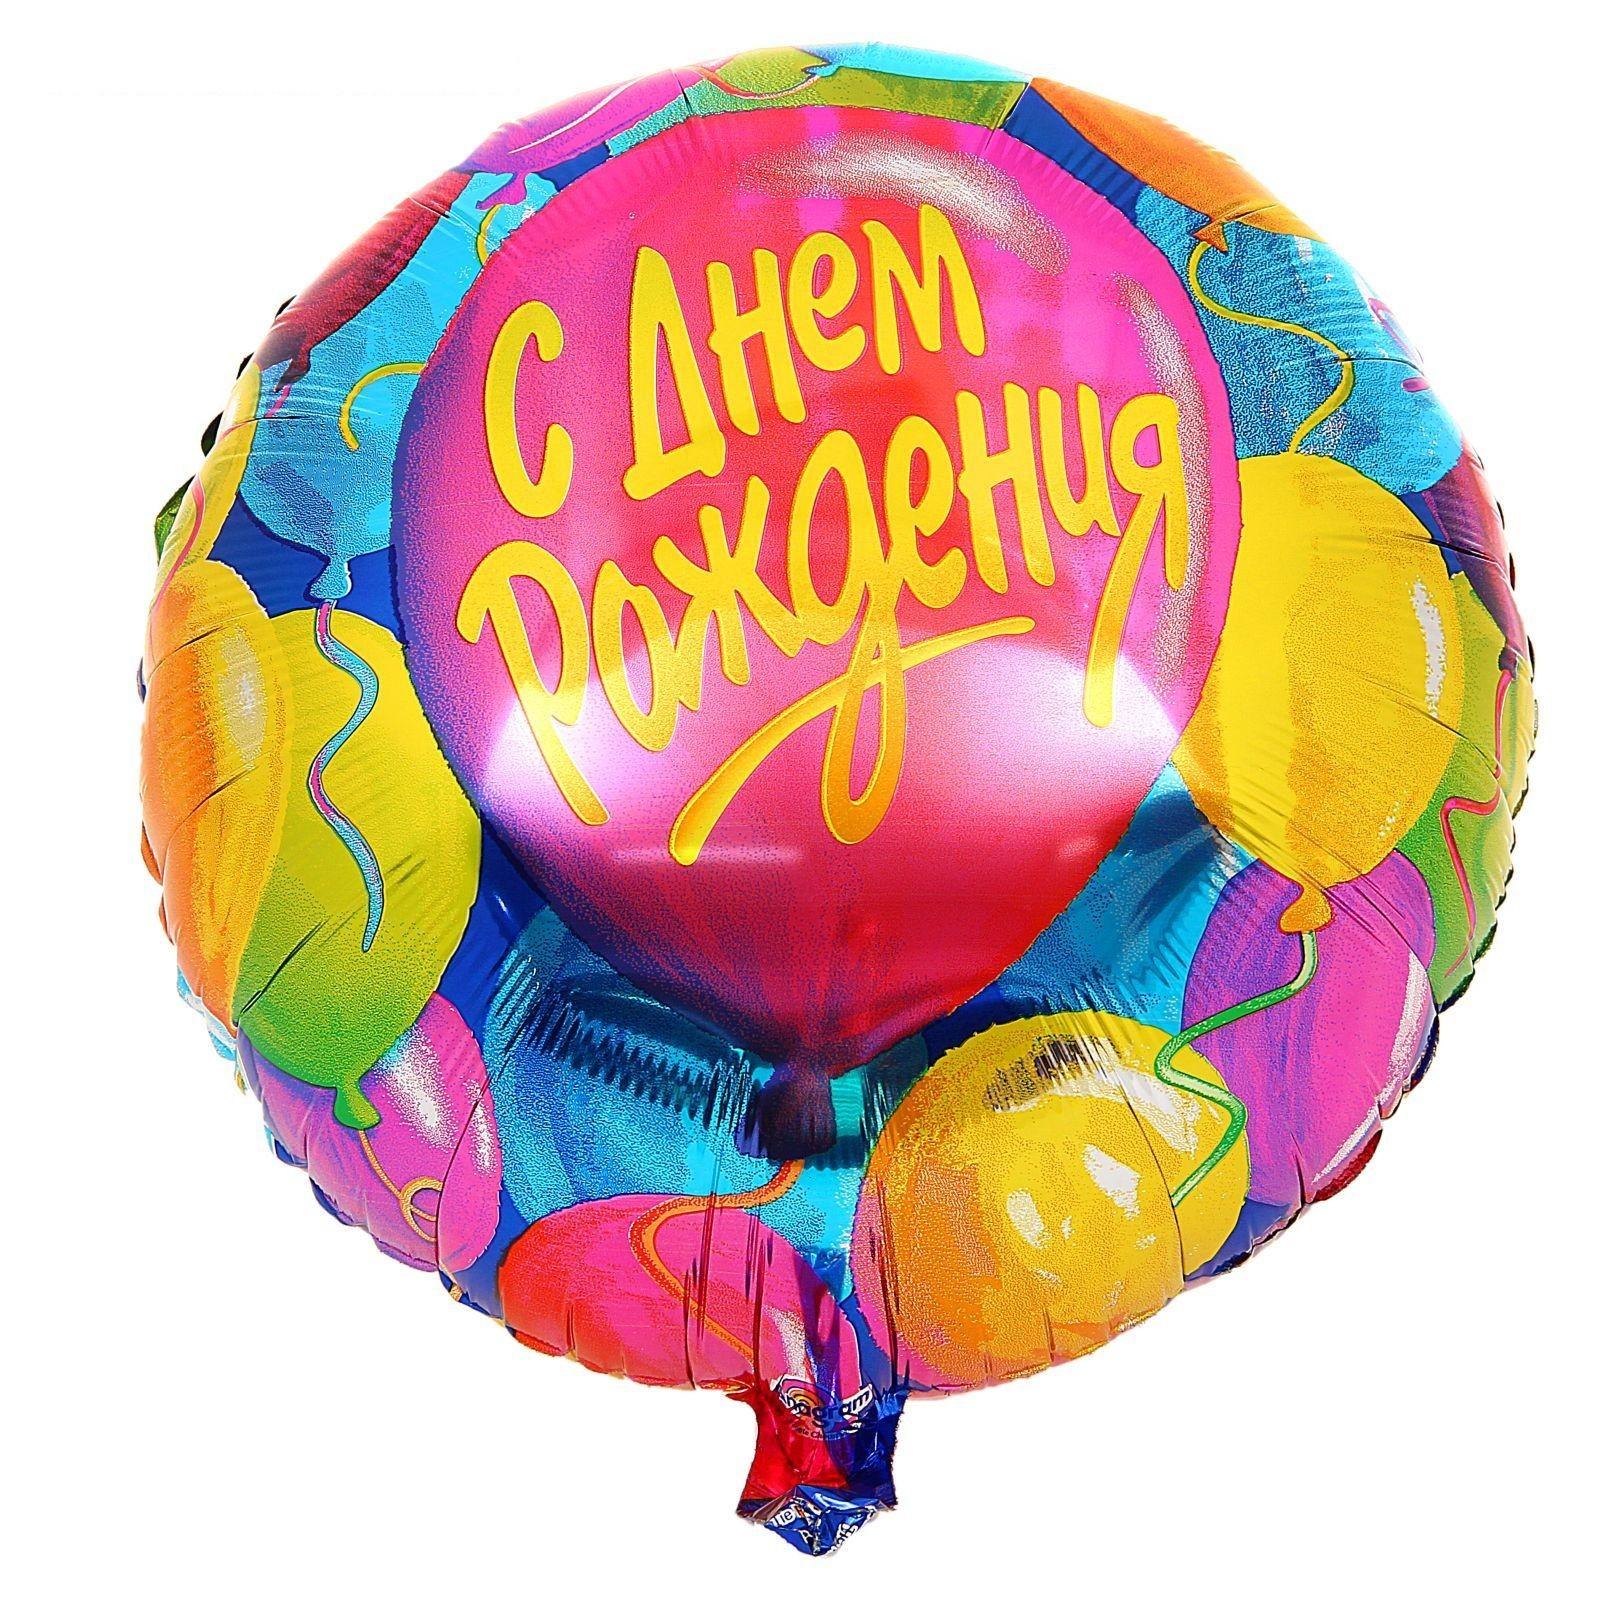 Фольгированные шары см. Шары с днем рождения. Воздушный шар фольга с днем рождения. Фольгированный шар с днем рождения. Шар фольга с днем рождения.